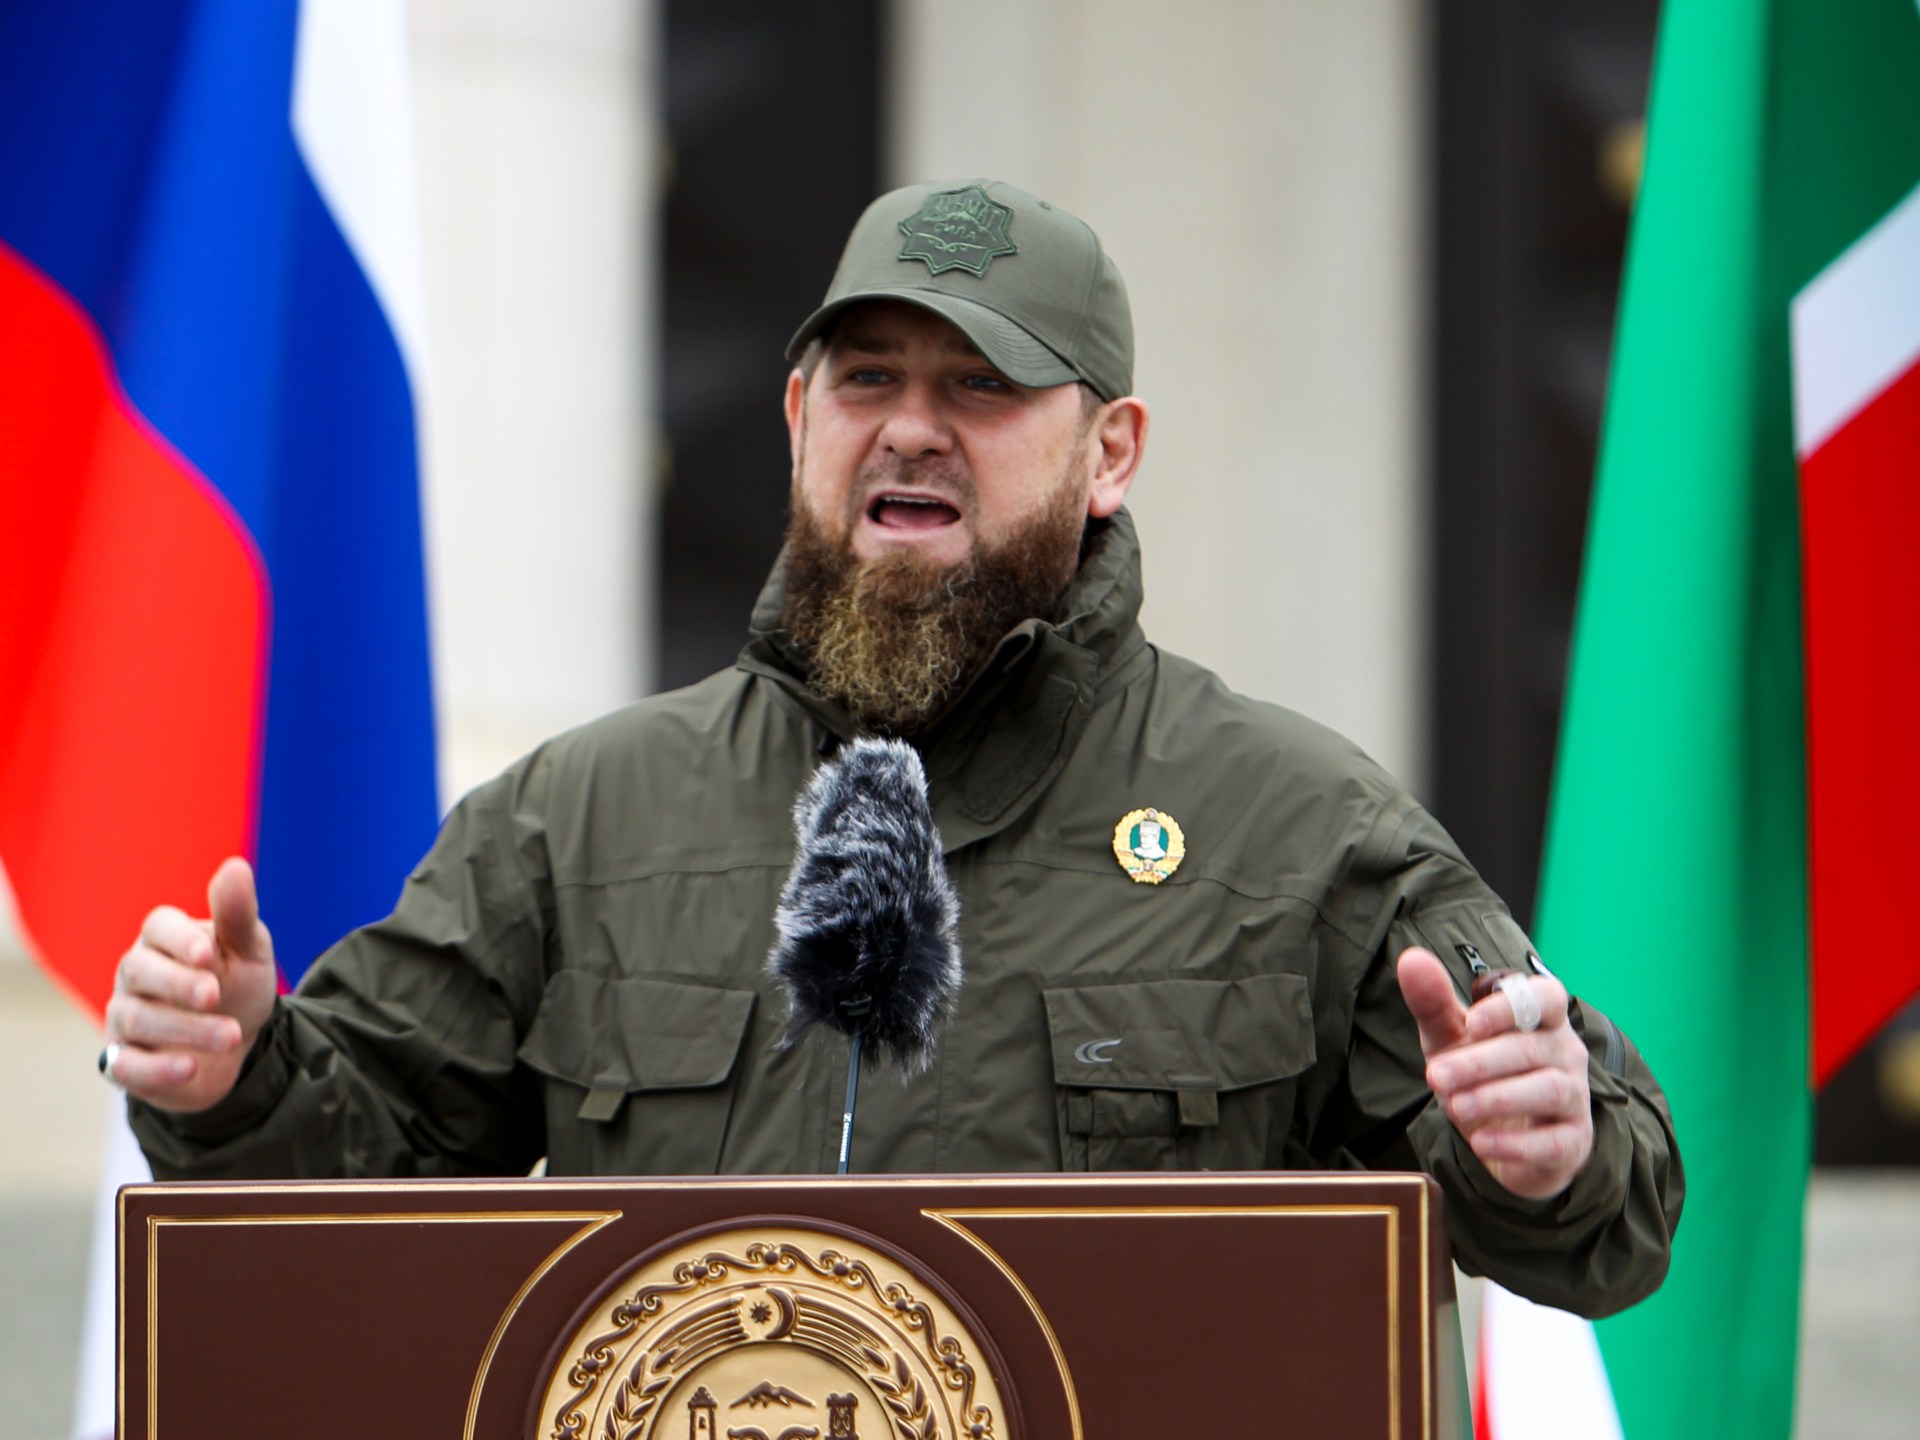 바그너의 거절 후 체첸군, 러시아와 계약 체결 |  러시아와 우크라이나 간의 전쟁 소식